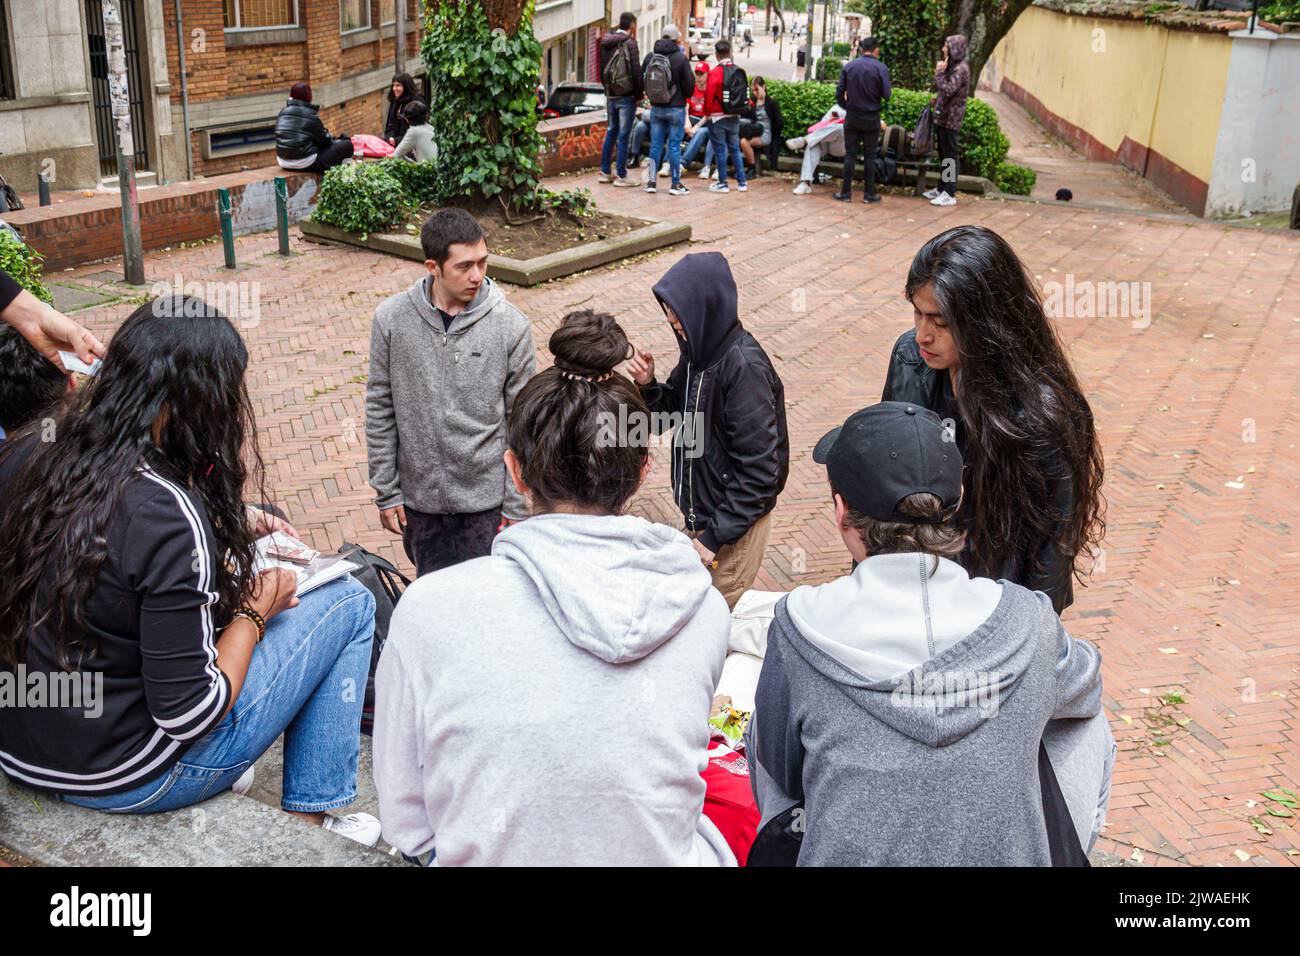 Bogota Colombia, La Candelaria Centro Histórico Centro Histórico Centro Ciudad Vieja Centro Egipto Universidad de los Andes estudiantes, teen teens tee Foto de stock